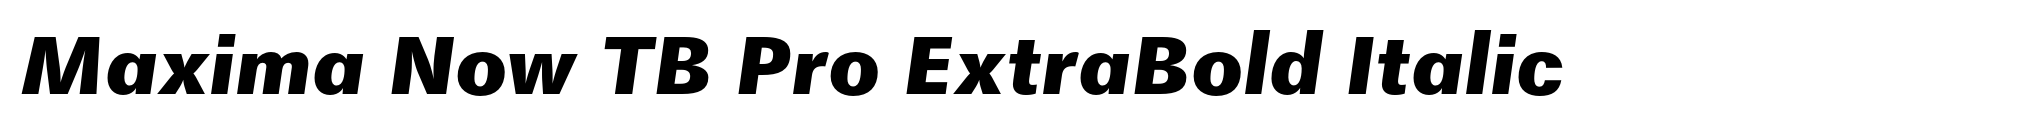 Maxima Now TB Pro ExtraBold Italic image